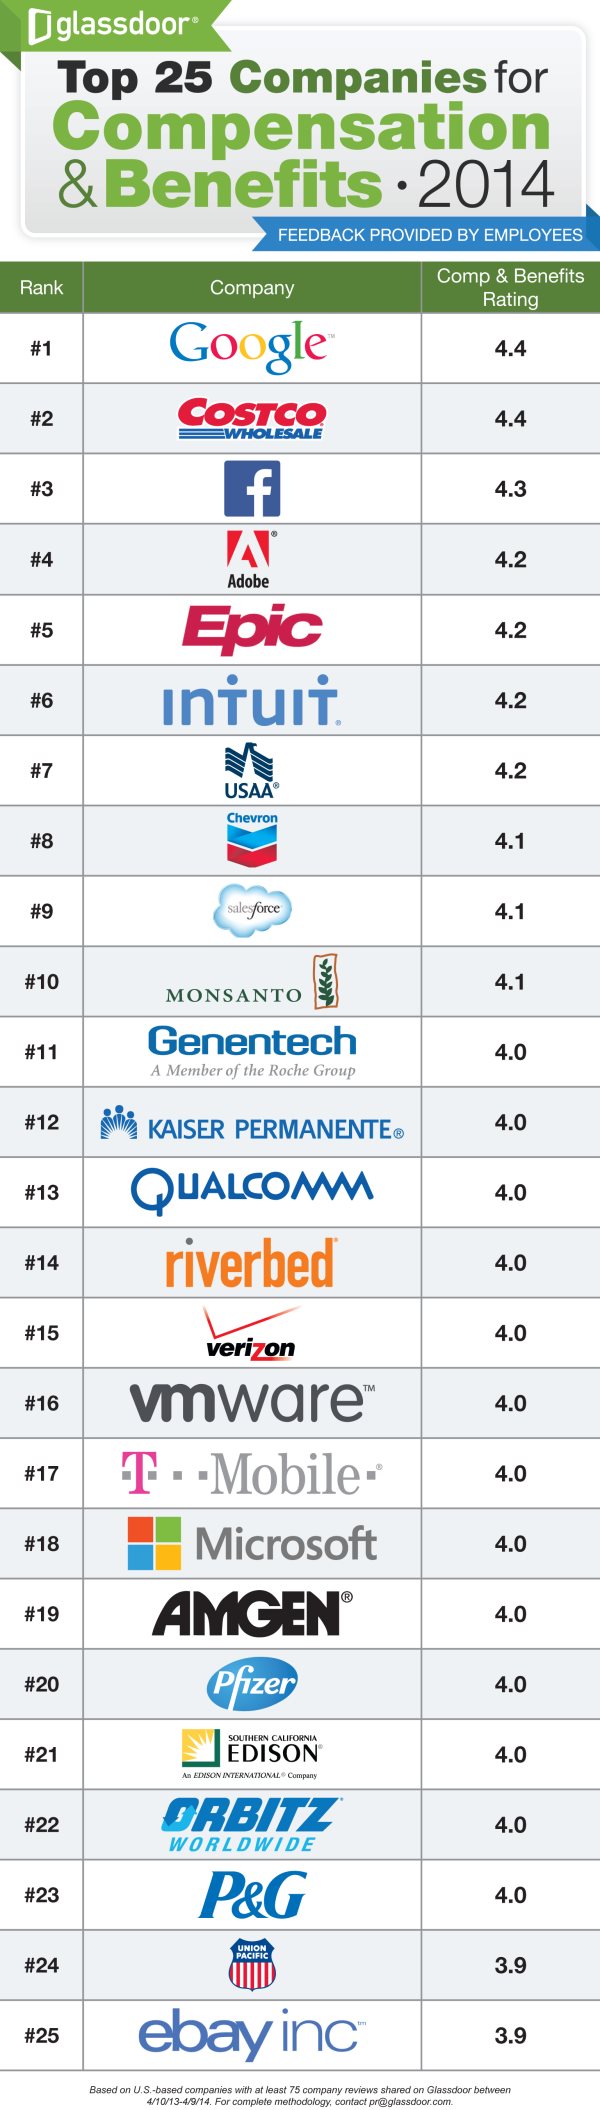 Glassdoor Top 25 Companies for Compensation & Benefits 2014